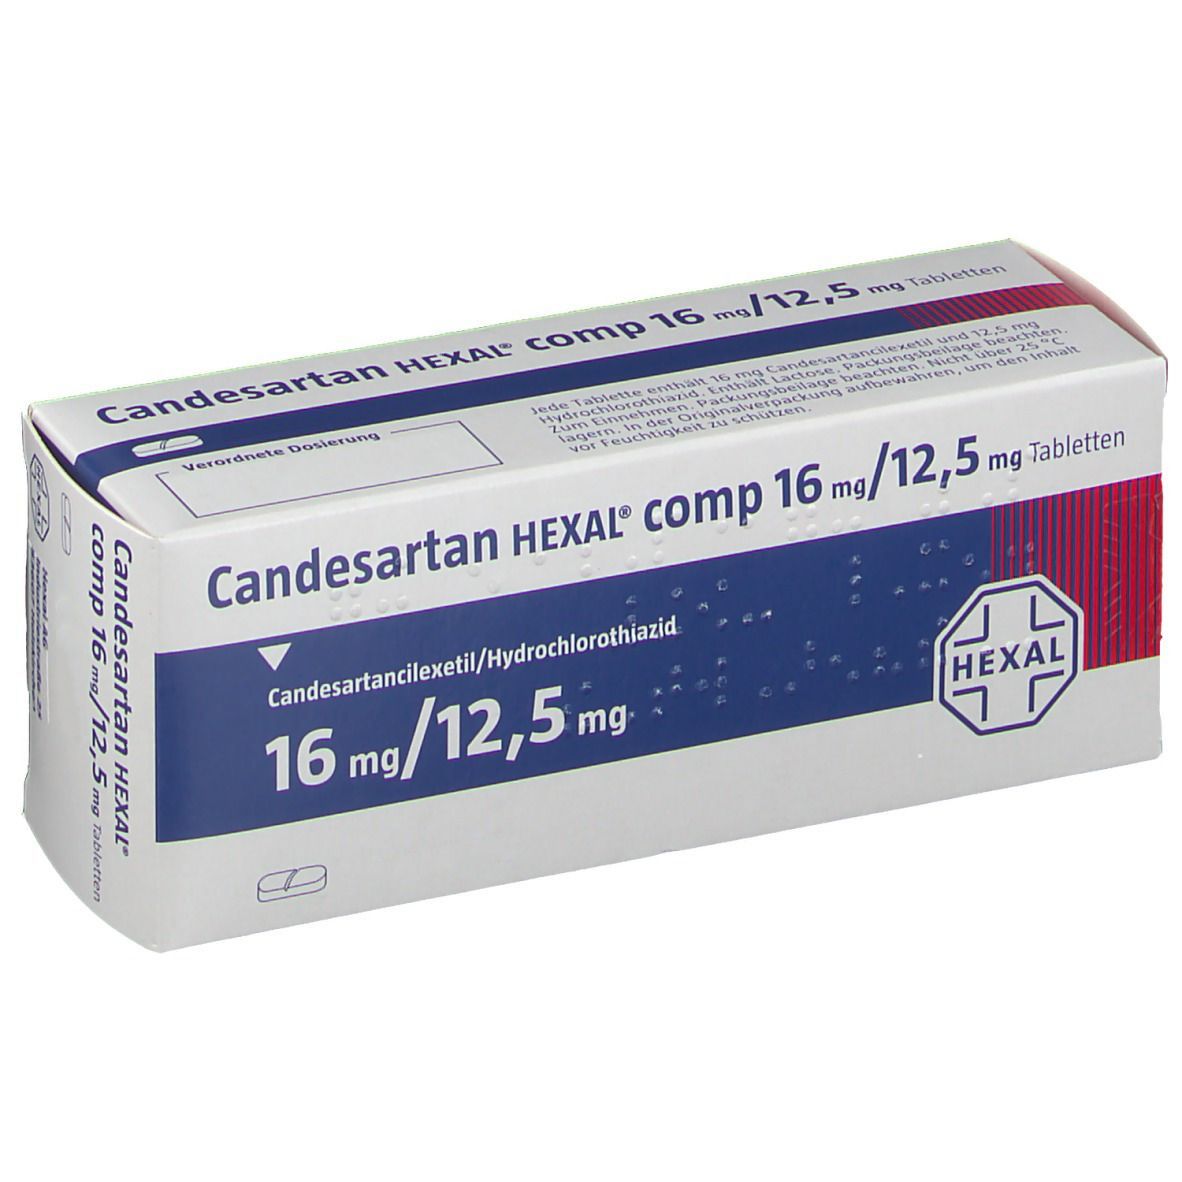 Candesartan HEXAL® comp 16 mg/12,5 mg